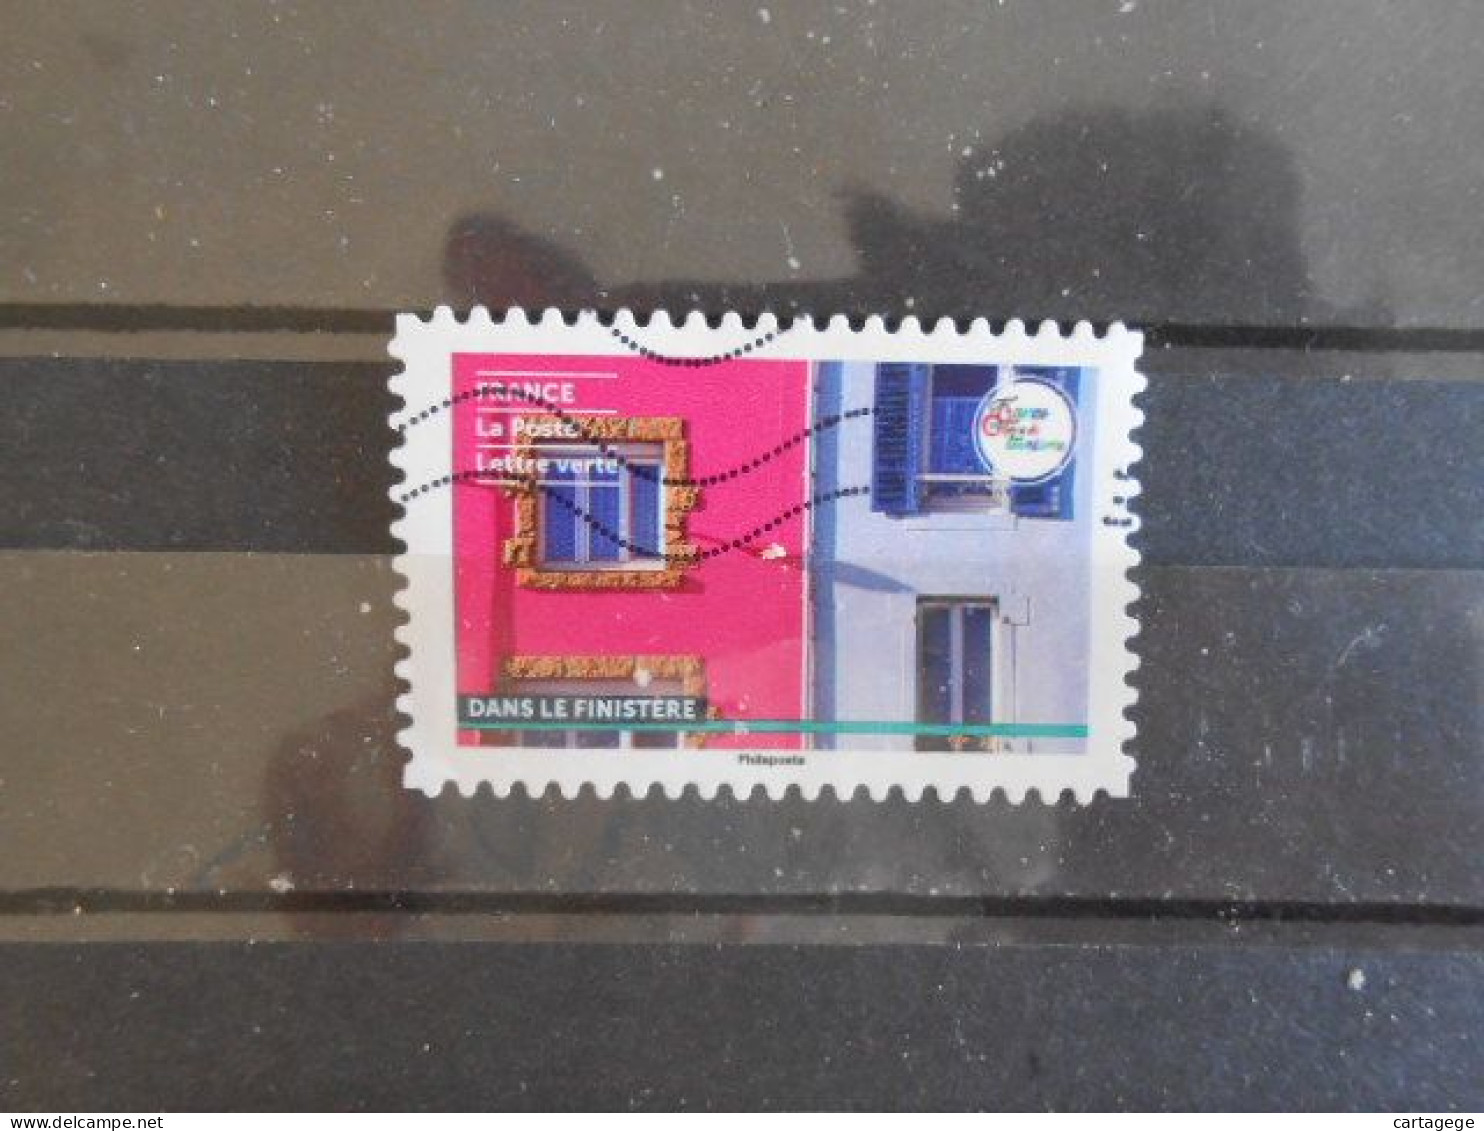 FRANCE YT 2172 DANS LE FINISTERE - Used Stamps